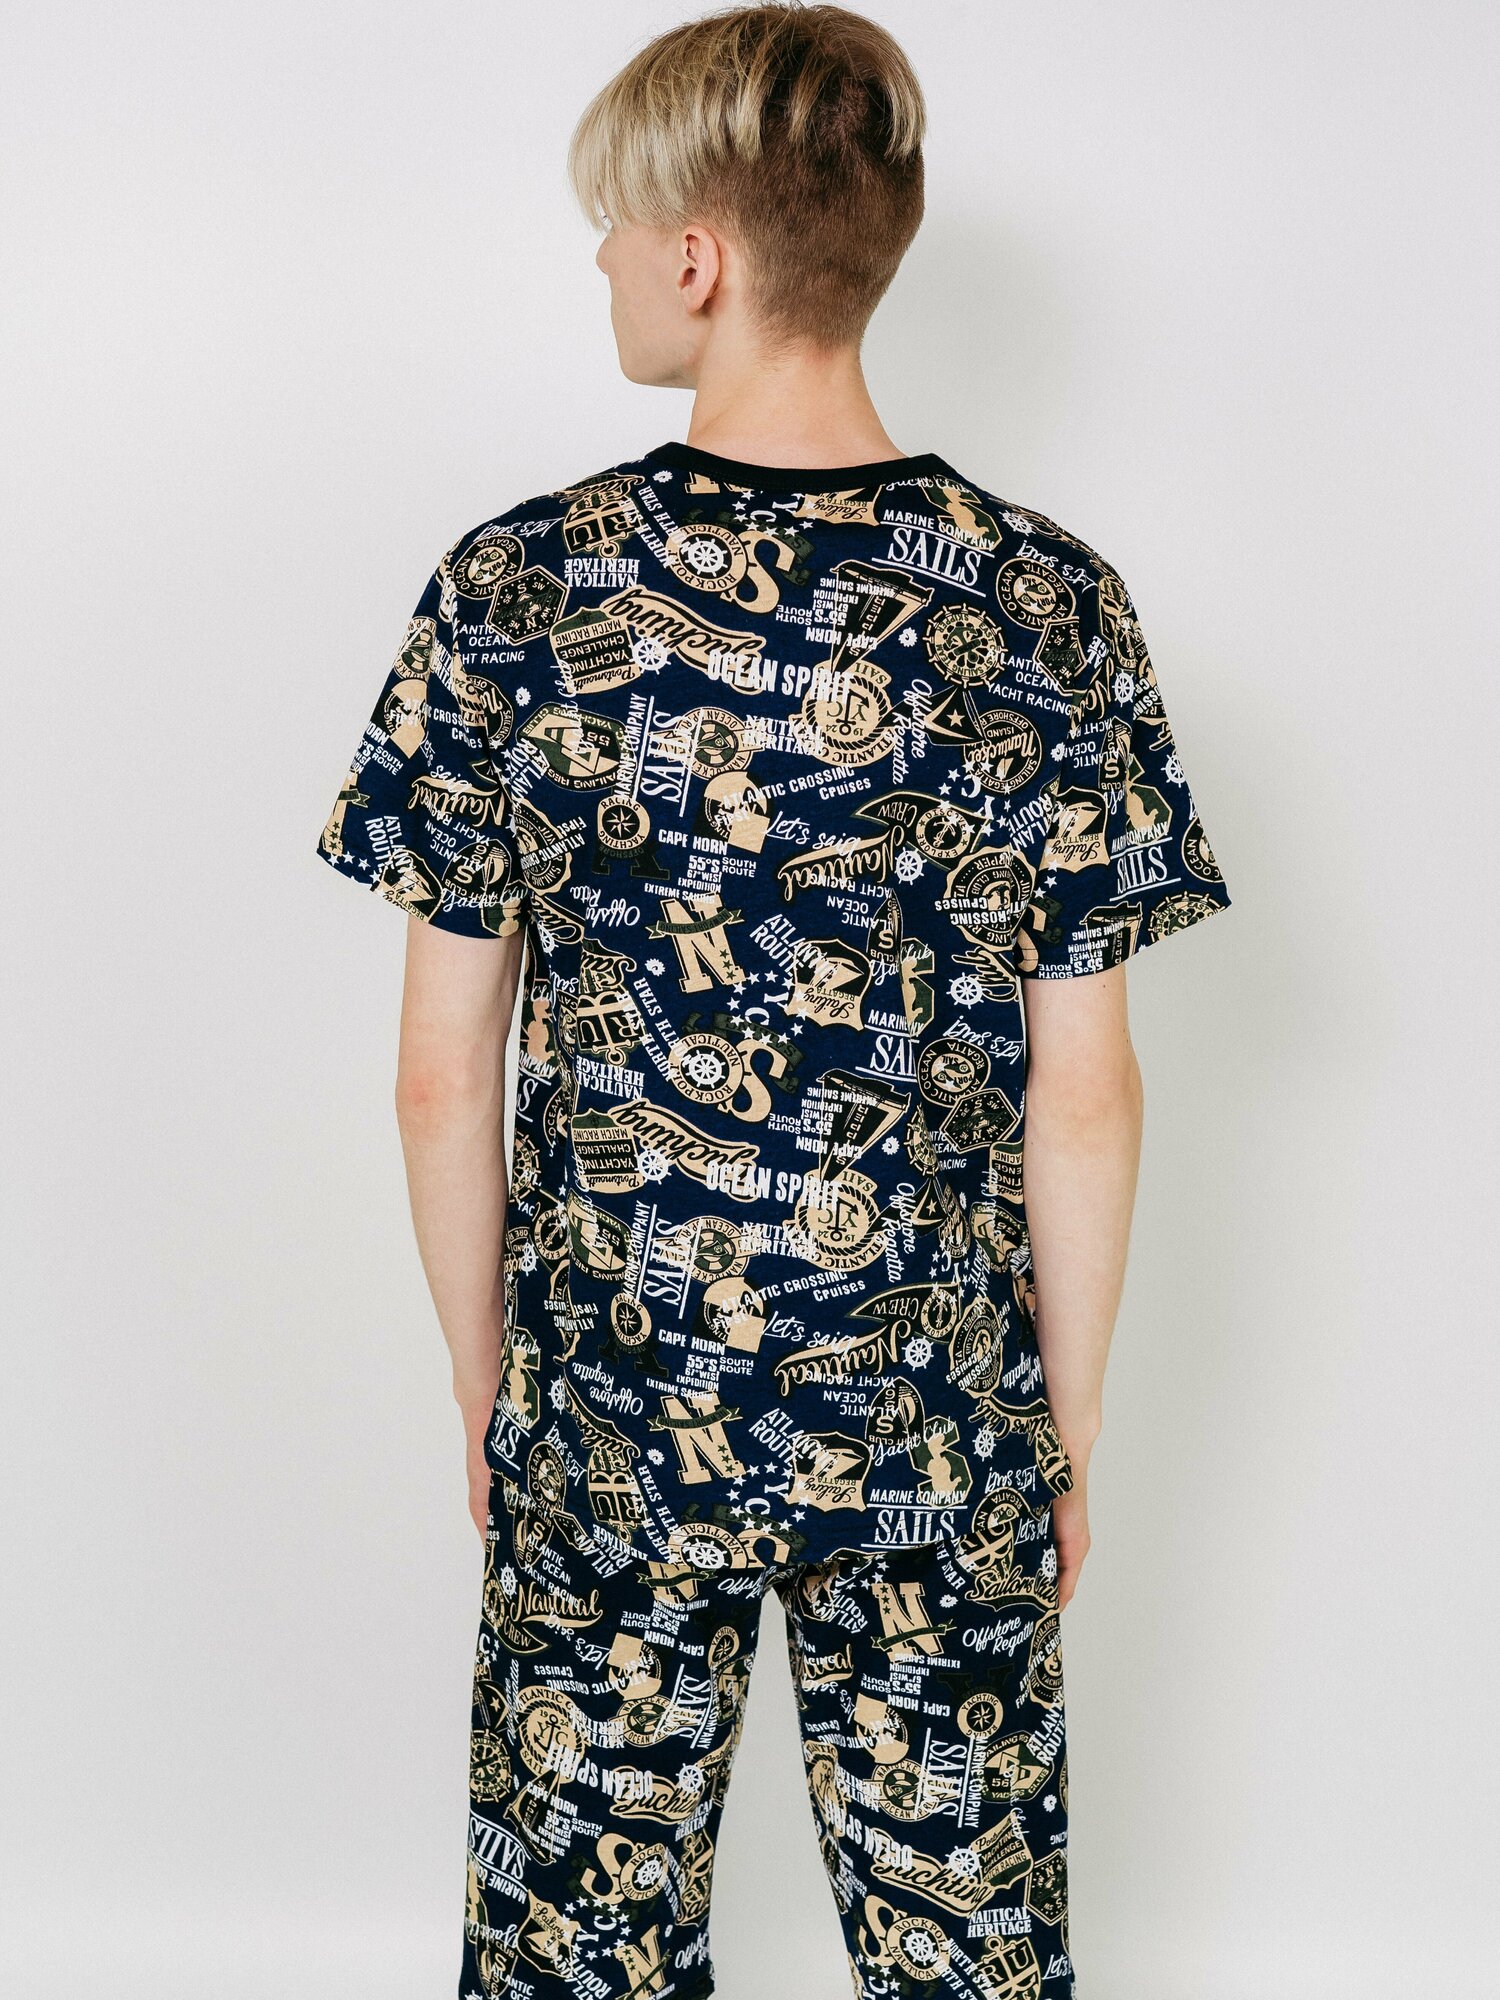 Мужская пижама, мужской пижамный комплект ARISTARHOV, Футболка + Шорты, Синий песочный, размер 50 - фотография № 11